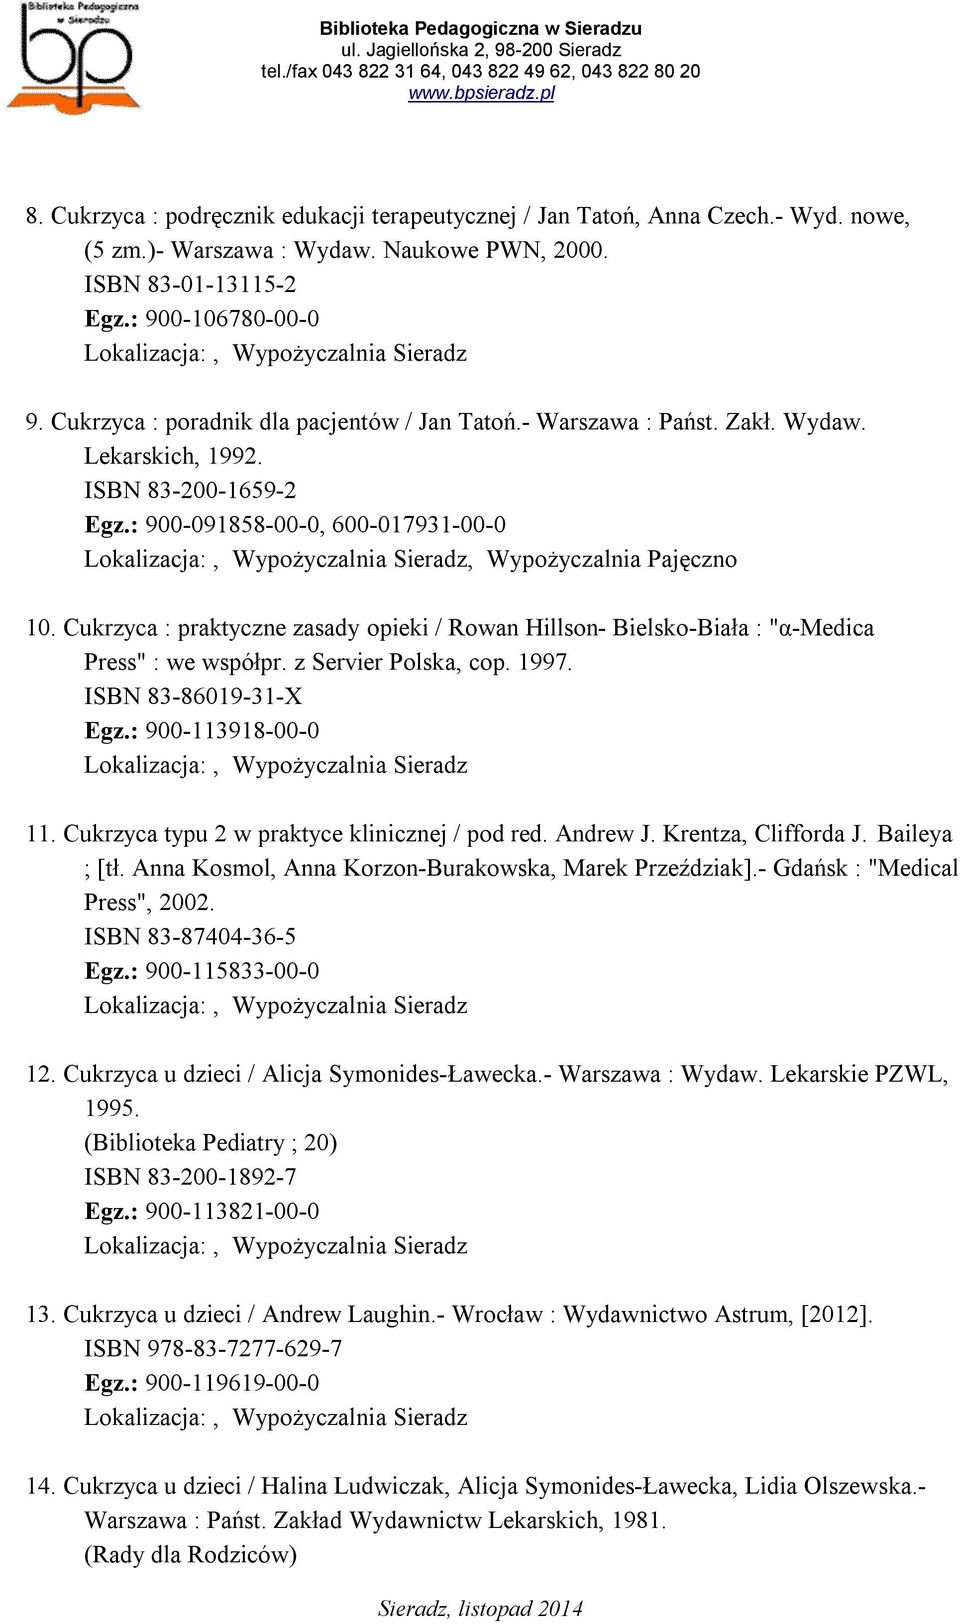 Cukrzyca : praktyczne zasady opieki / Rowan Hillson- Bielsko-Biała : "α-medica Press" : we współpr. z Servier Polska, cop. 1997. ISBN 83-86019-31-X Egz.: 900-113918-00-0 11.